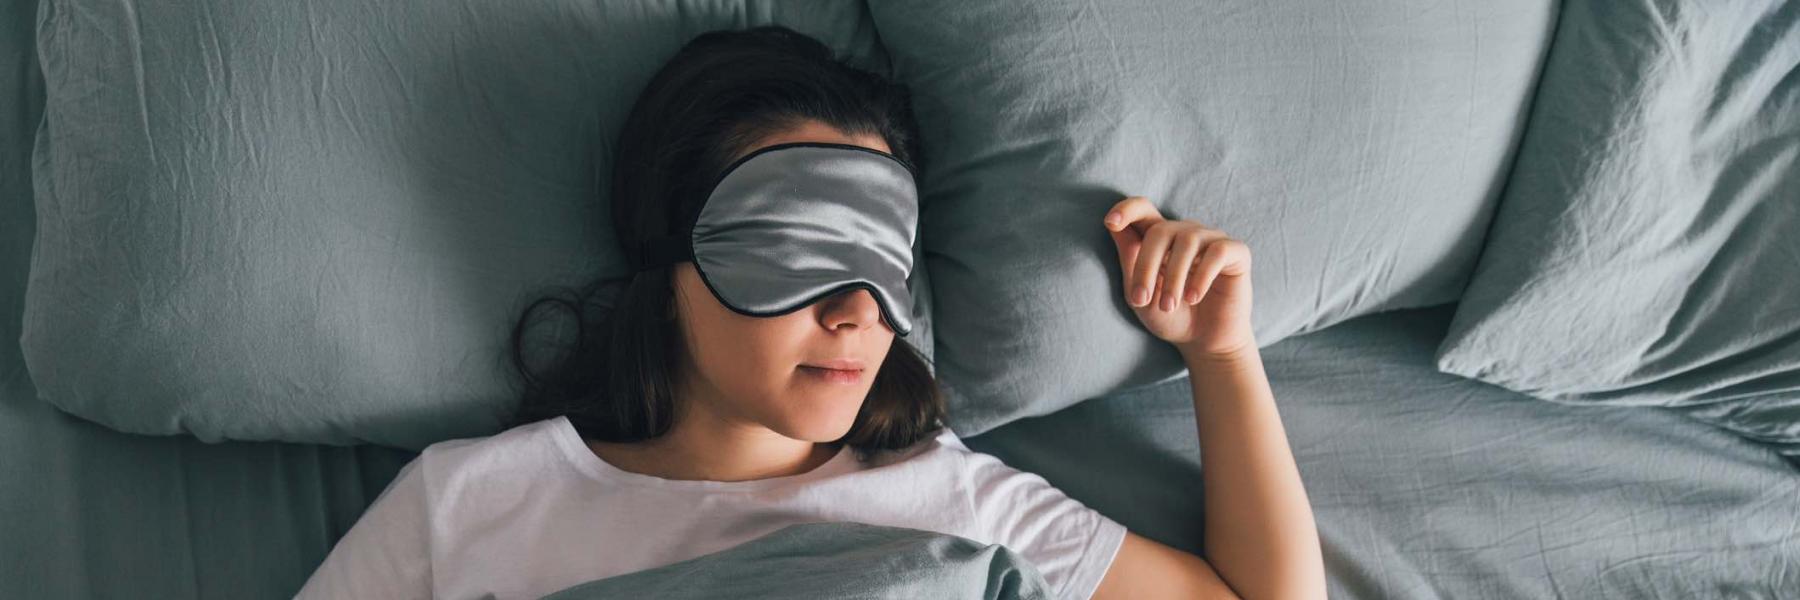 هل من الآمن تناول أدوية الحساسية للمساعدة على النوم كل ليلة؟ 